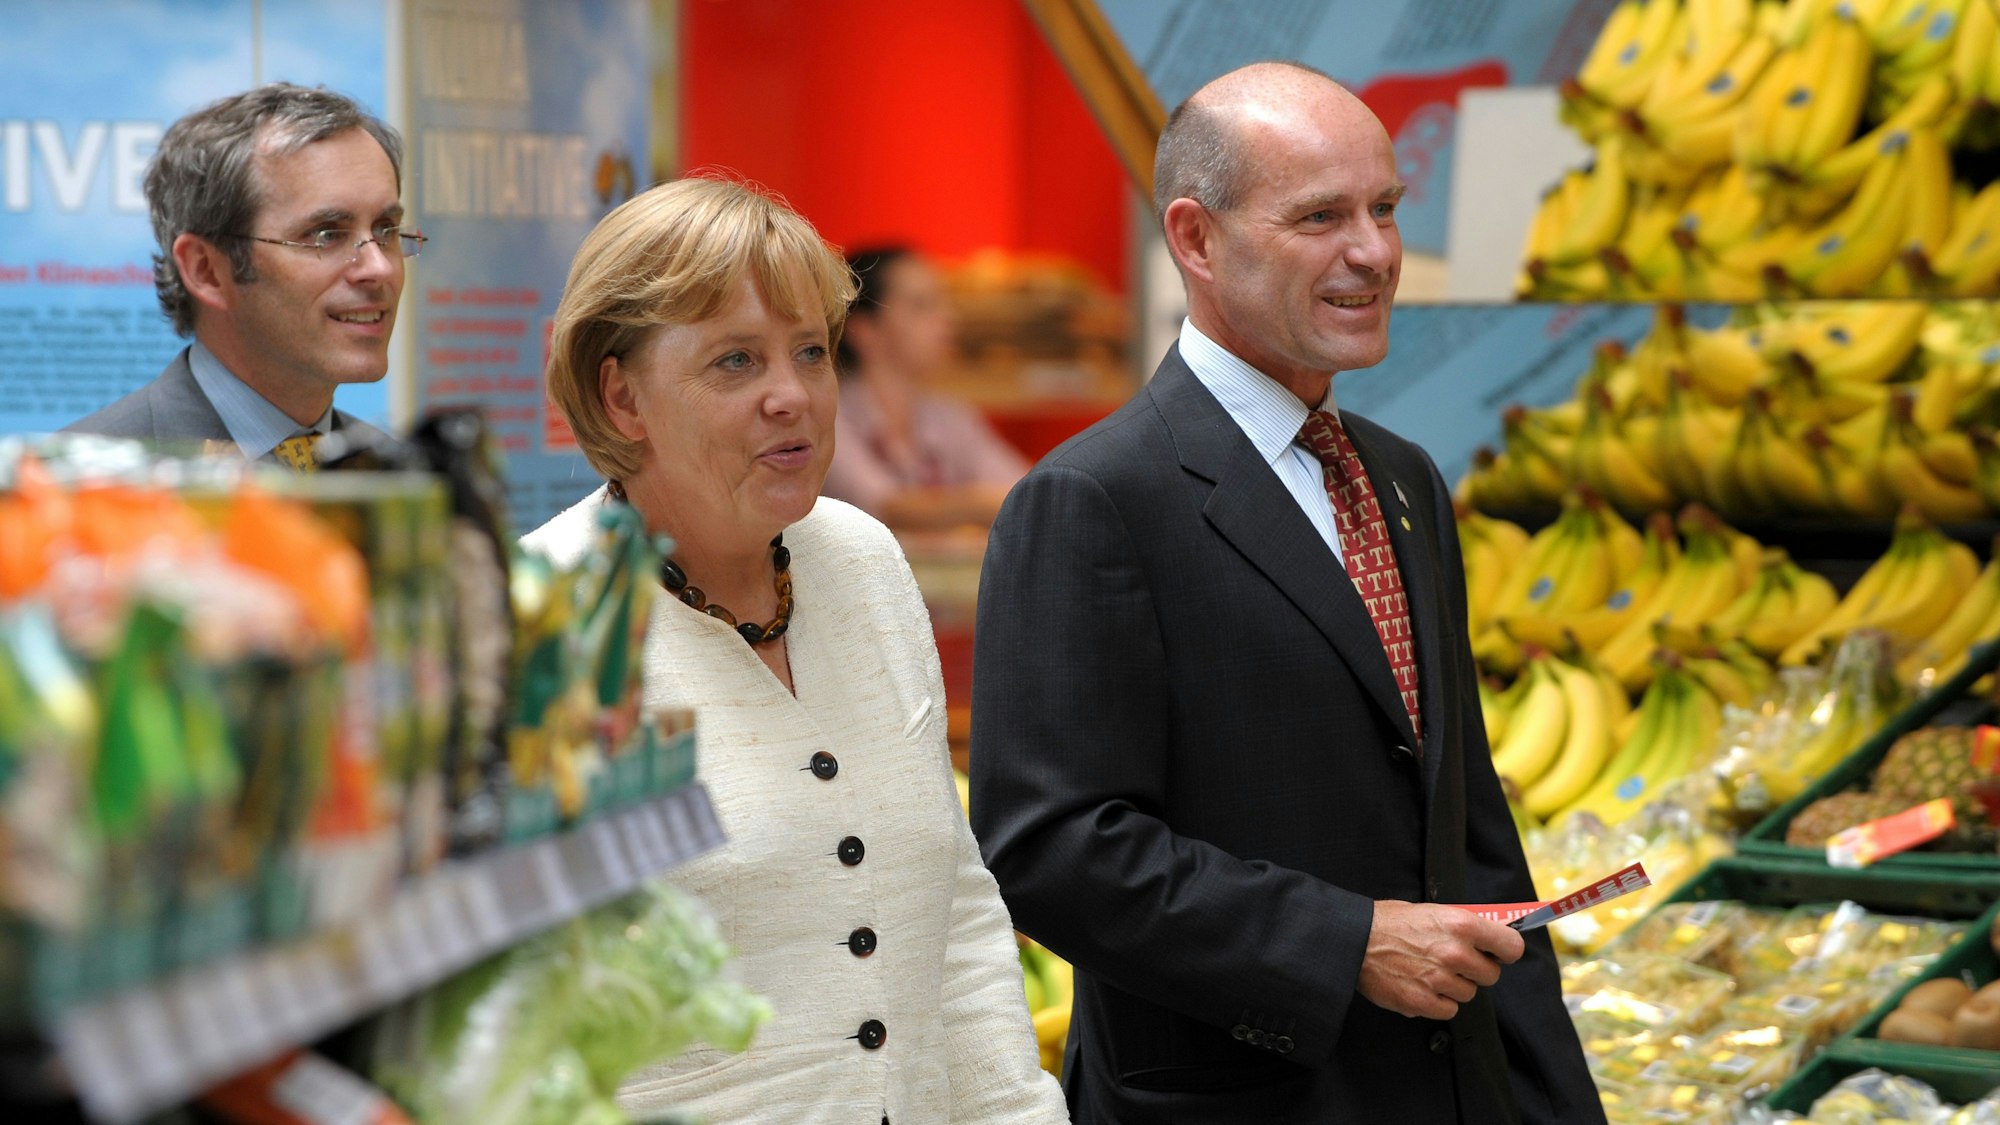 Angela Merkel geht mit Karl-Erivan Haub und Christian Haub durch einen Supermarkt.